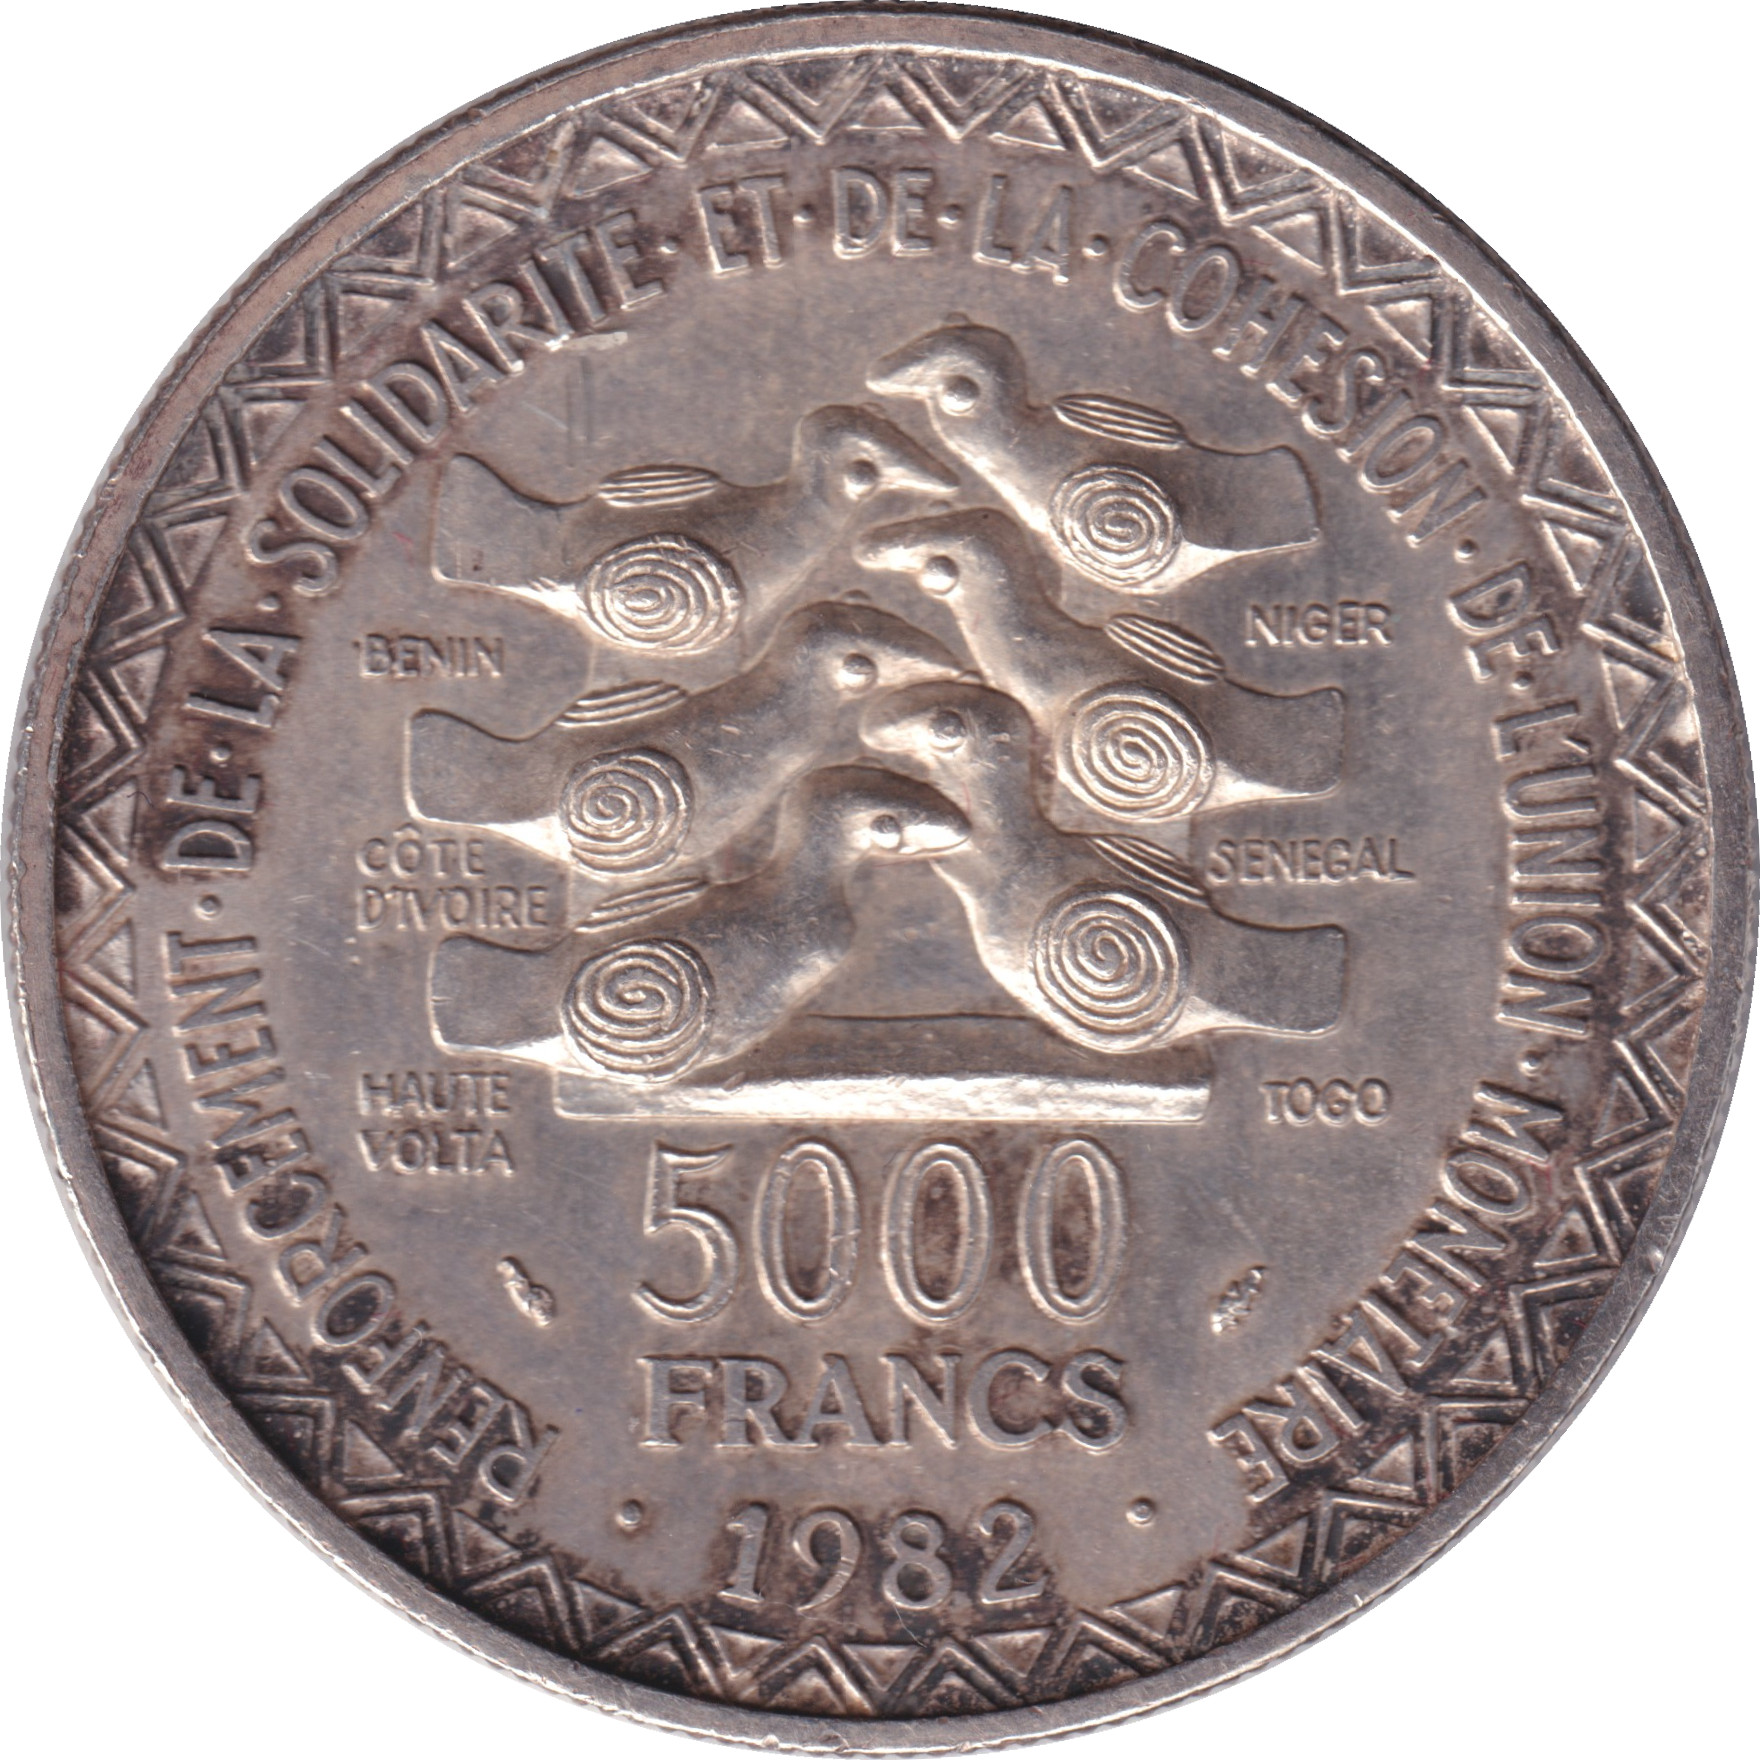 5000 francs - Union monétaire - 20 ans